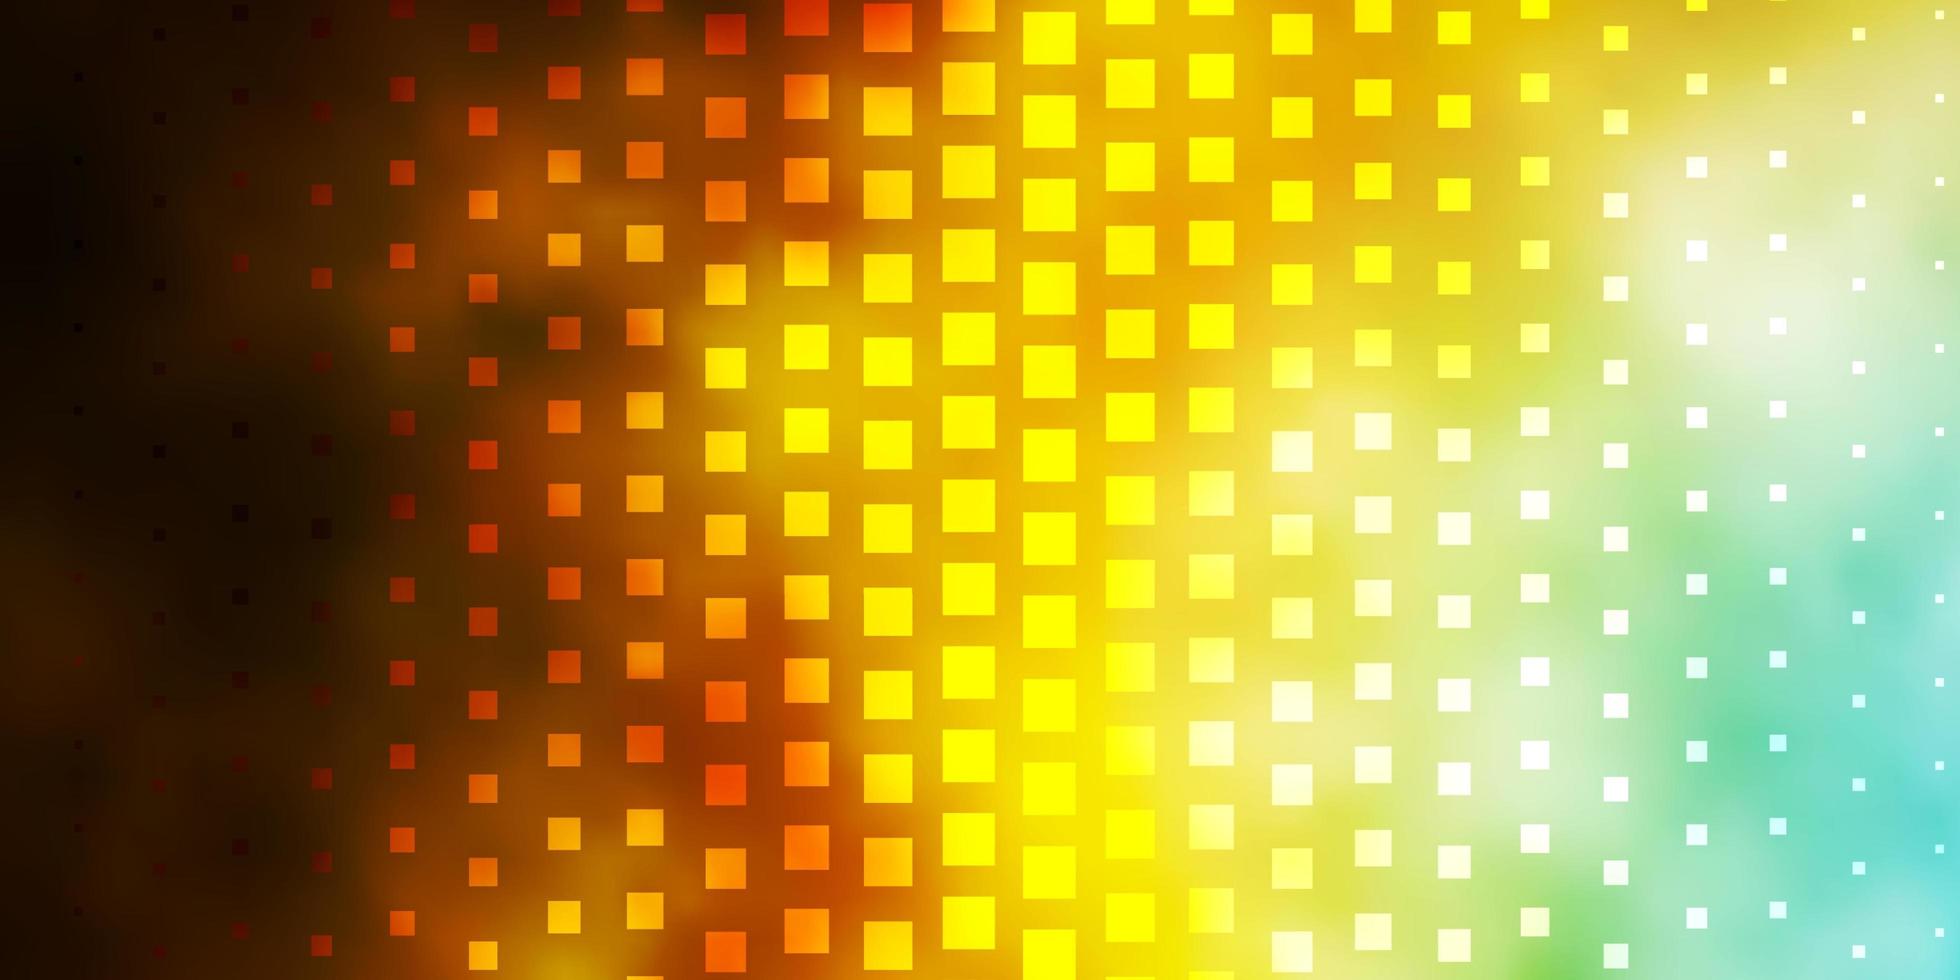 ljusblå gul vektorbakgrund i polygonal stil abstrakt lutningsillustration med färgglada rektanglar mönster för affärshäften broschyrer vektor